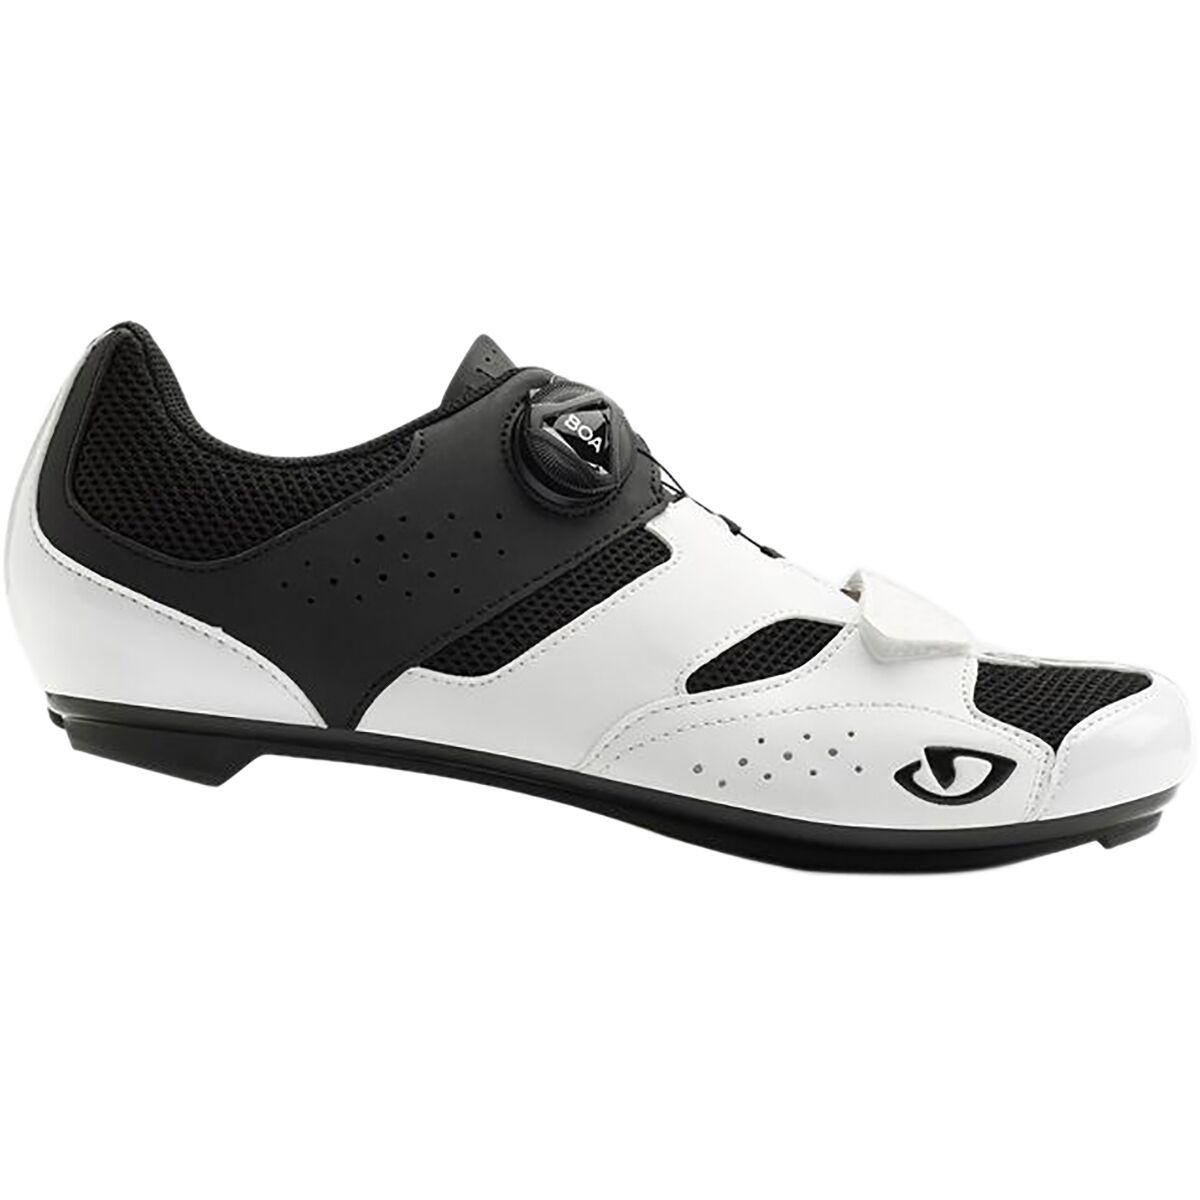 Giro Savix Cycling Shoe - Men's | Backcountry.com